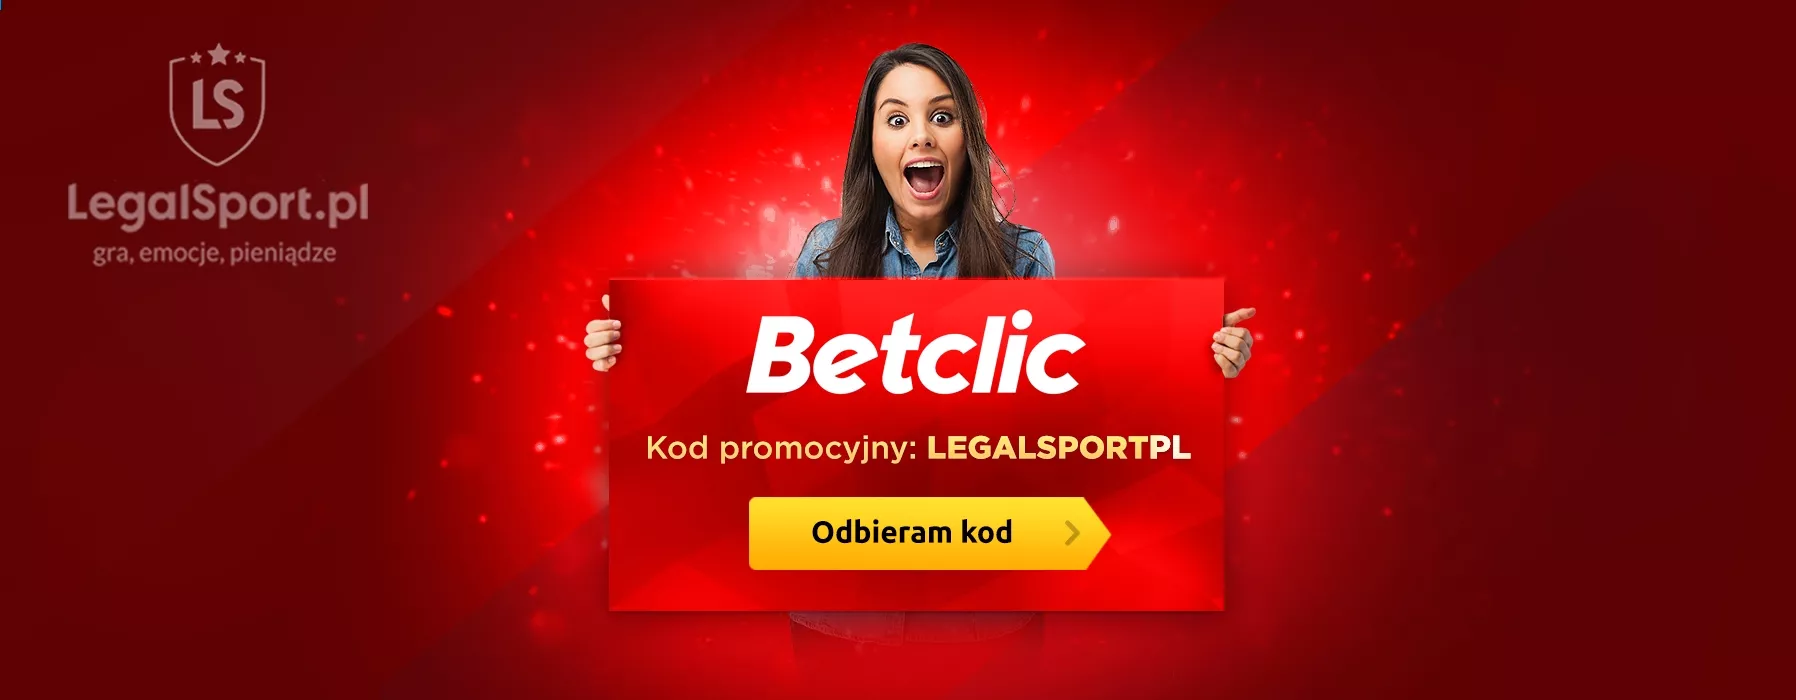 Kod promocyjny do bonusu na start w Betclic Polska (cashback 550 zł)